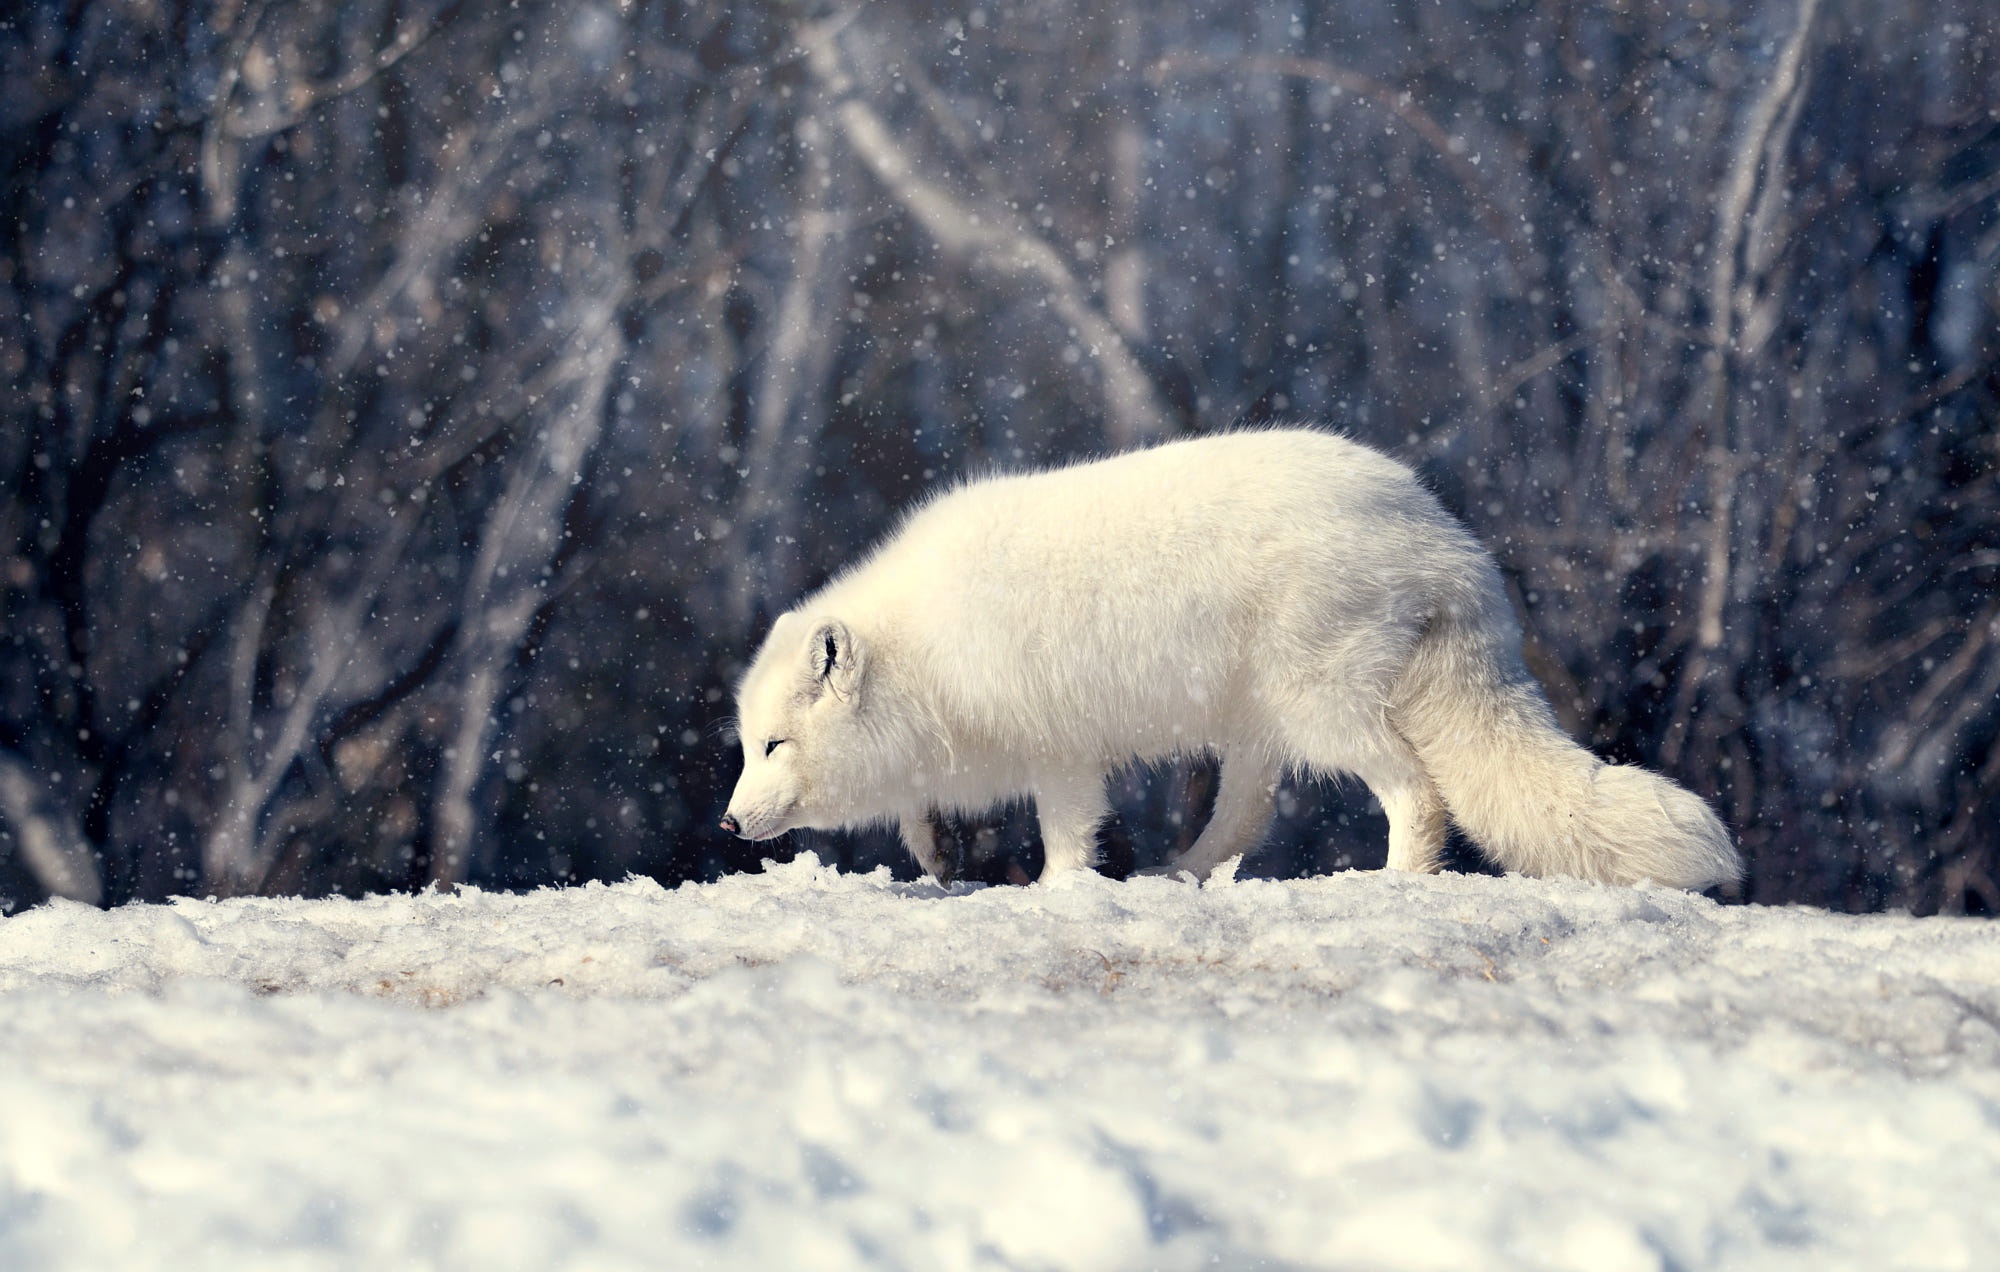 Скачать обои бесплатно Животные, Собаки, Снег, Лисица, Арктическая Лиса картинка на рабочий стол ПК